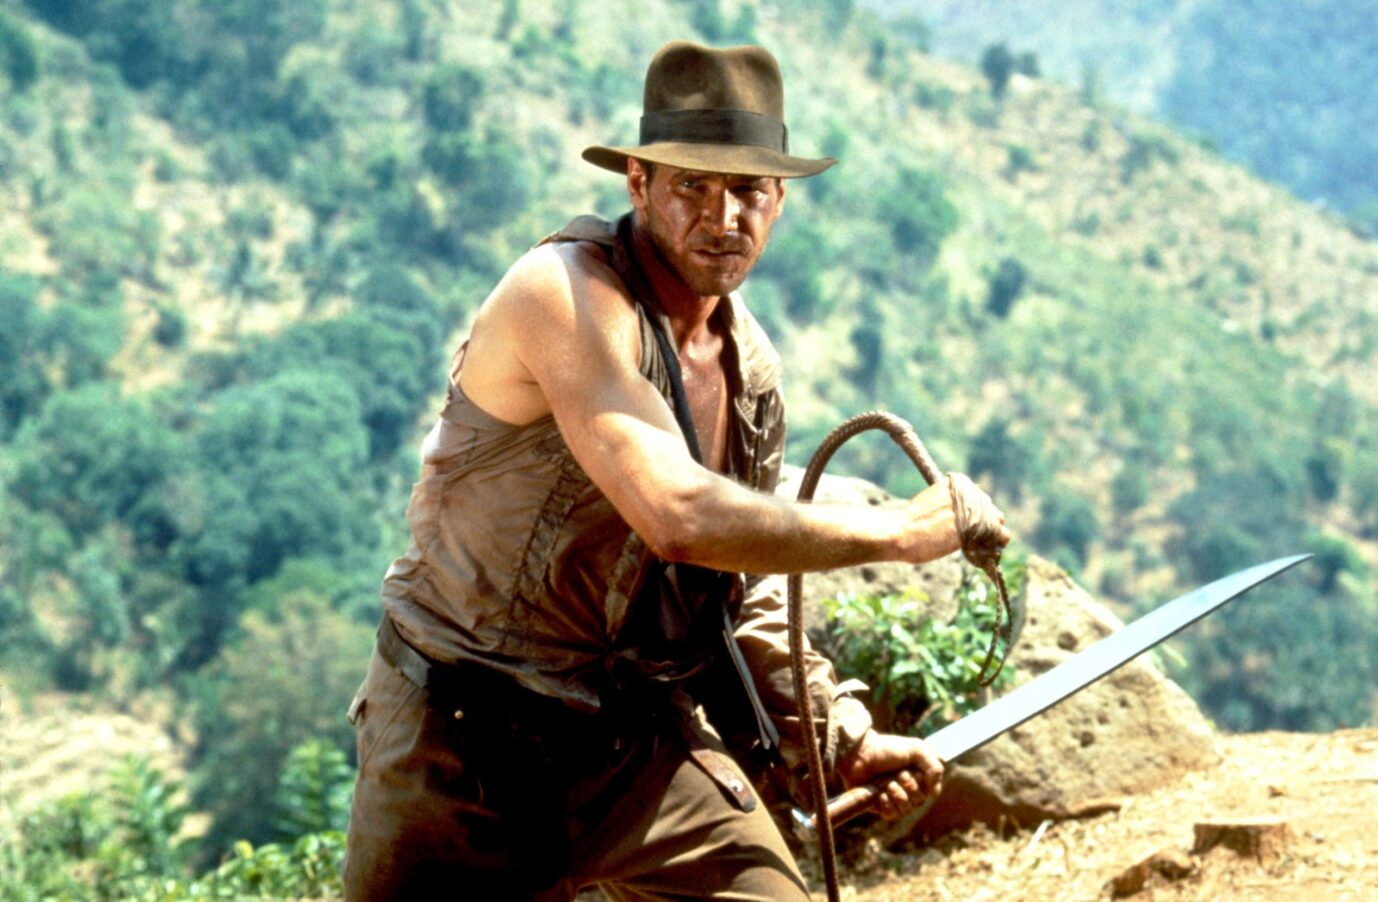 Foto: picture alliance / Schauspieler Harrison Ford in seiner Rolle als Indiana Jones